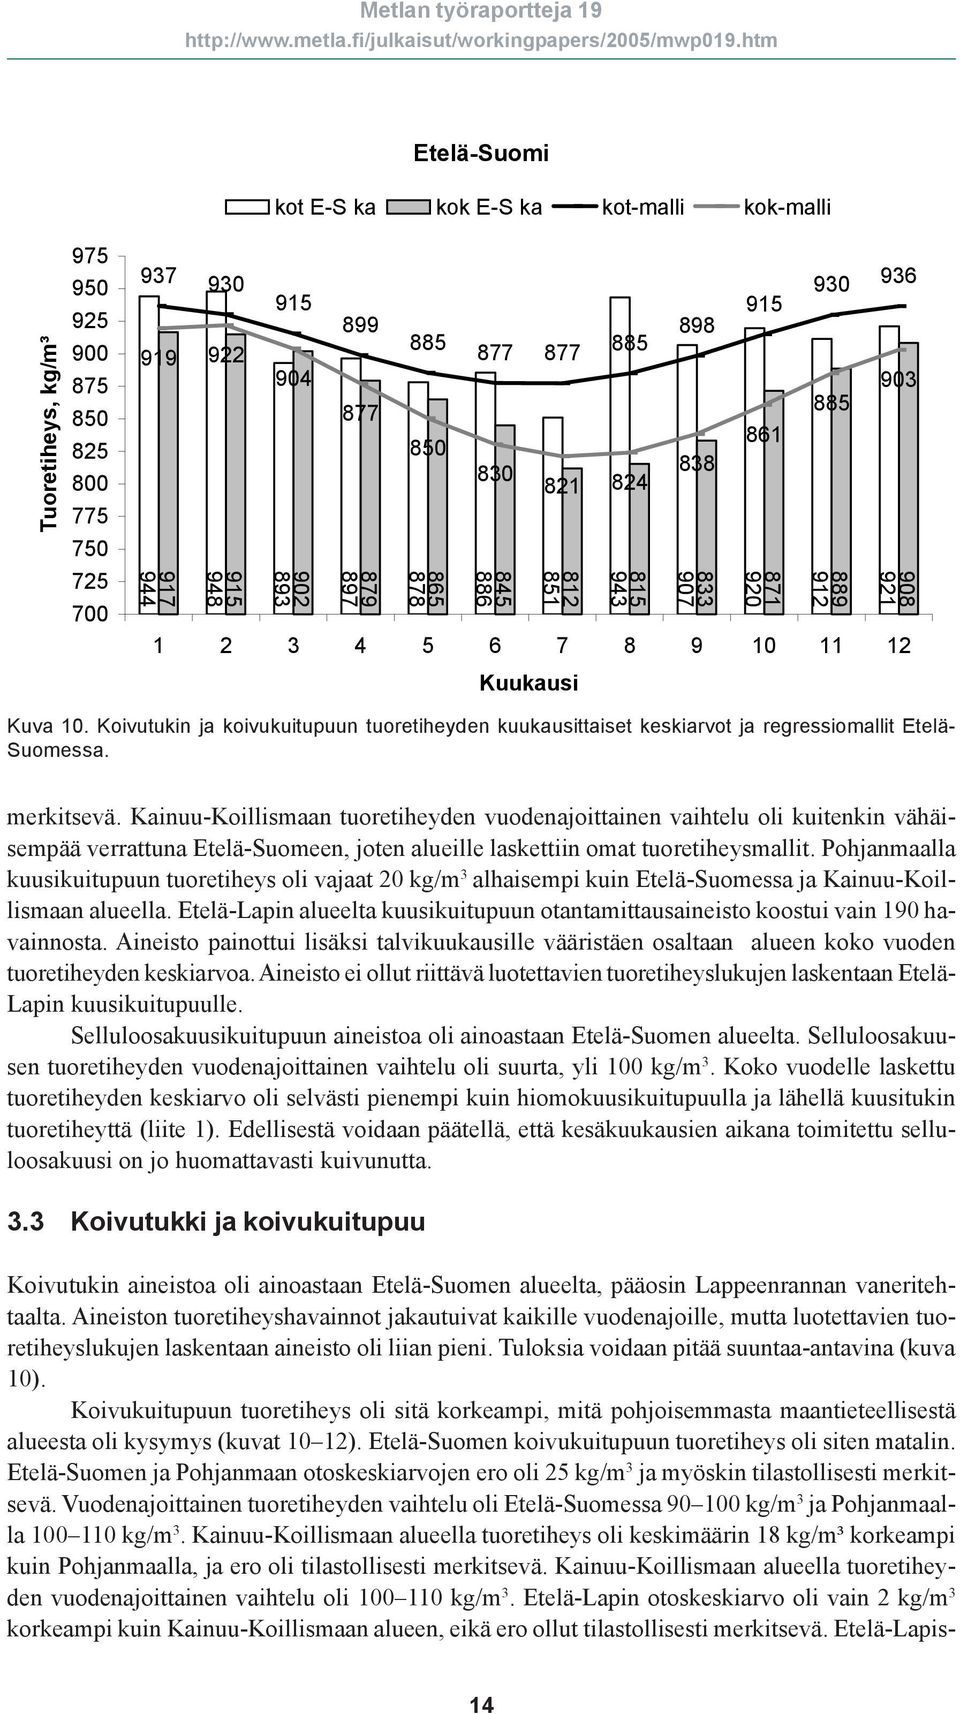 Kainuu-Koillismaan tuoretiheyden vuodenajoittainen vaihtelu oli kuitenkin vähäisempää verrattuna Etelä-Suomeen, joten alueille laskettiin omat tuoretiheysmallit.